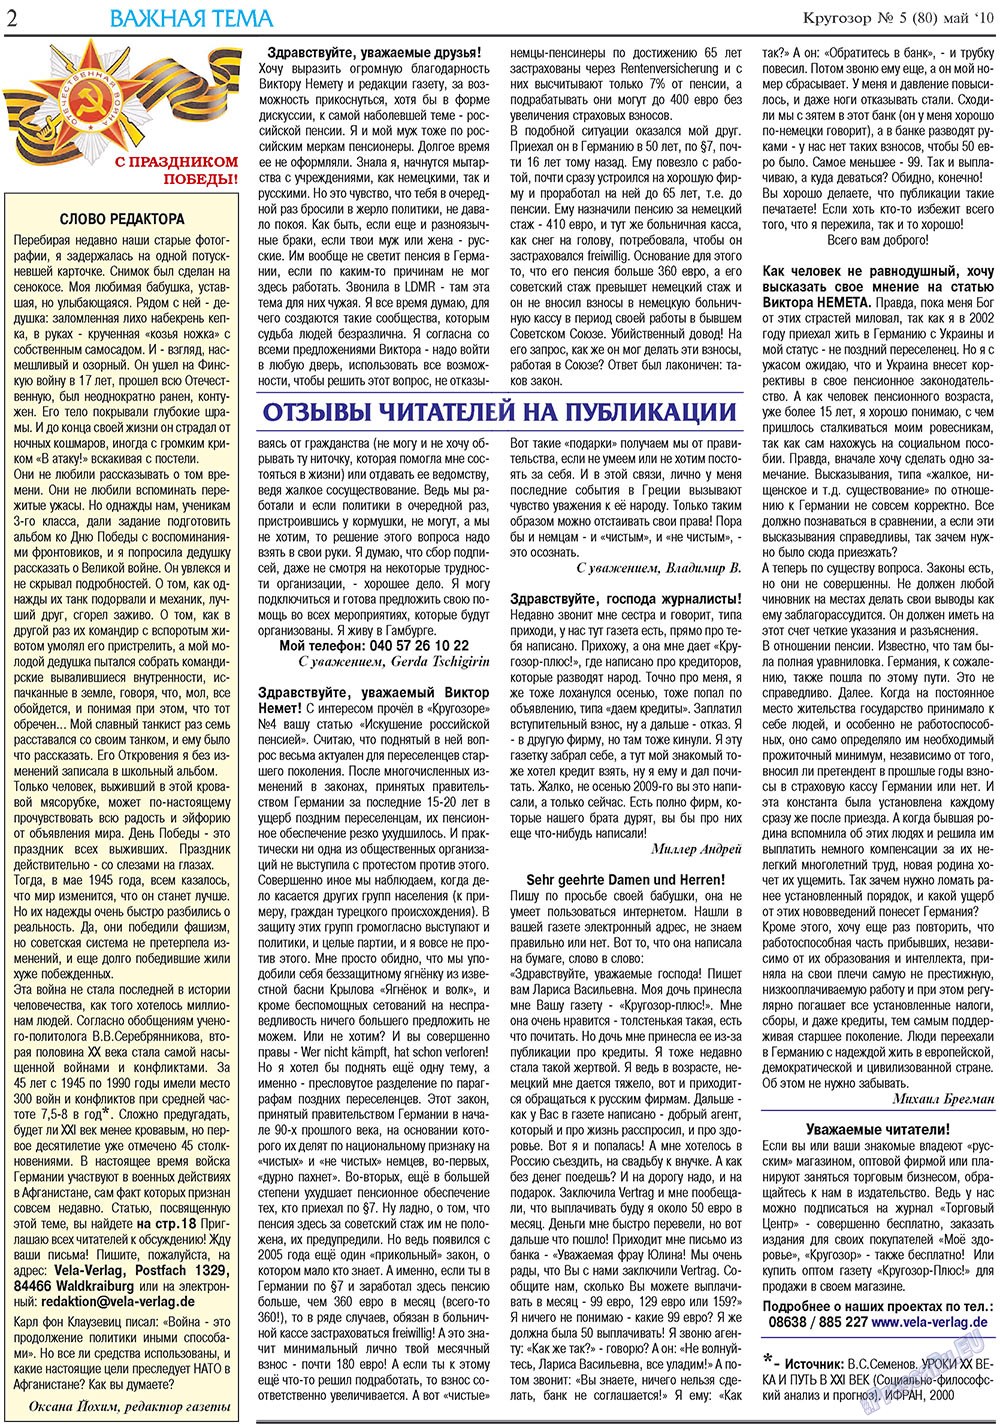 Кругозор плюс!, газета. 2010 №5 стр.2